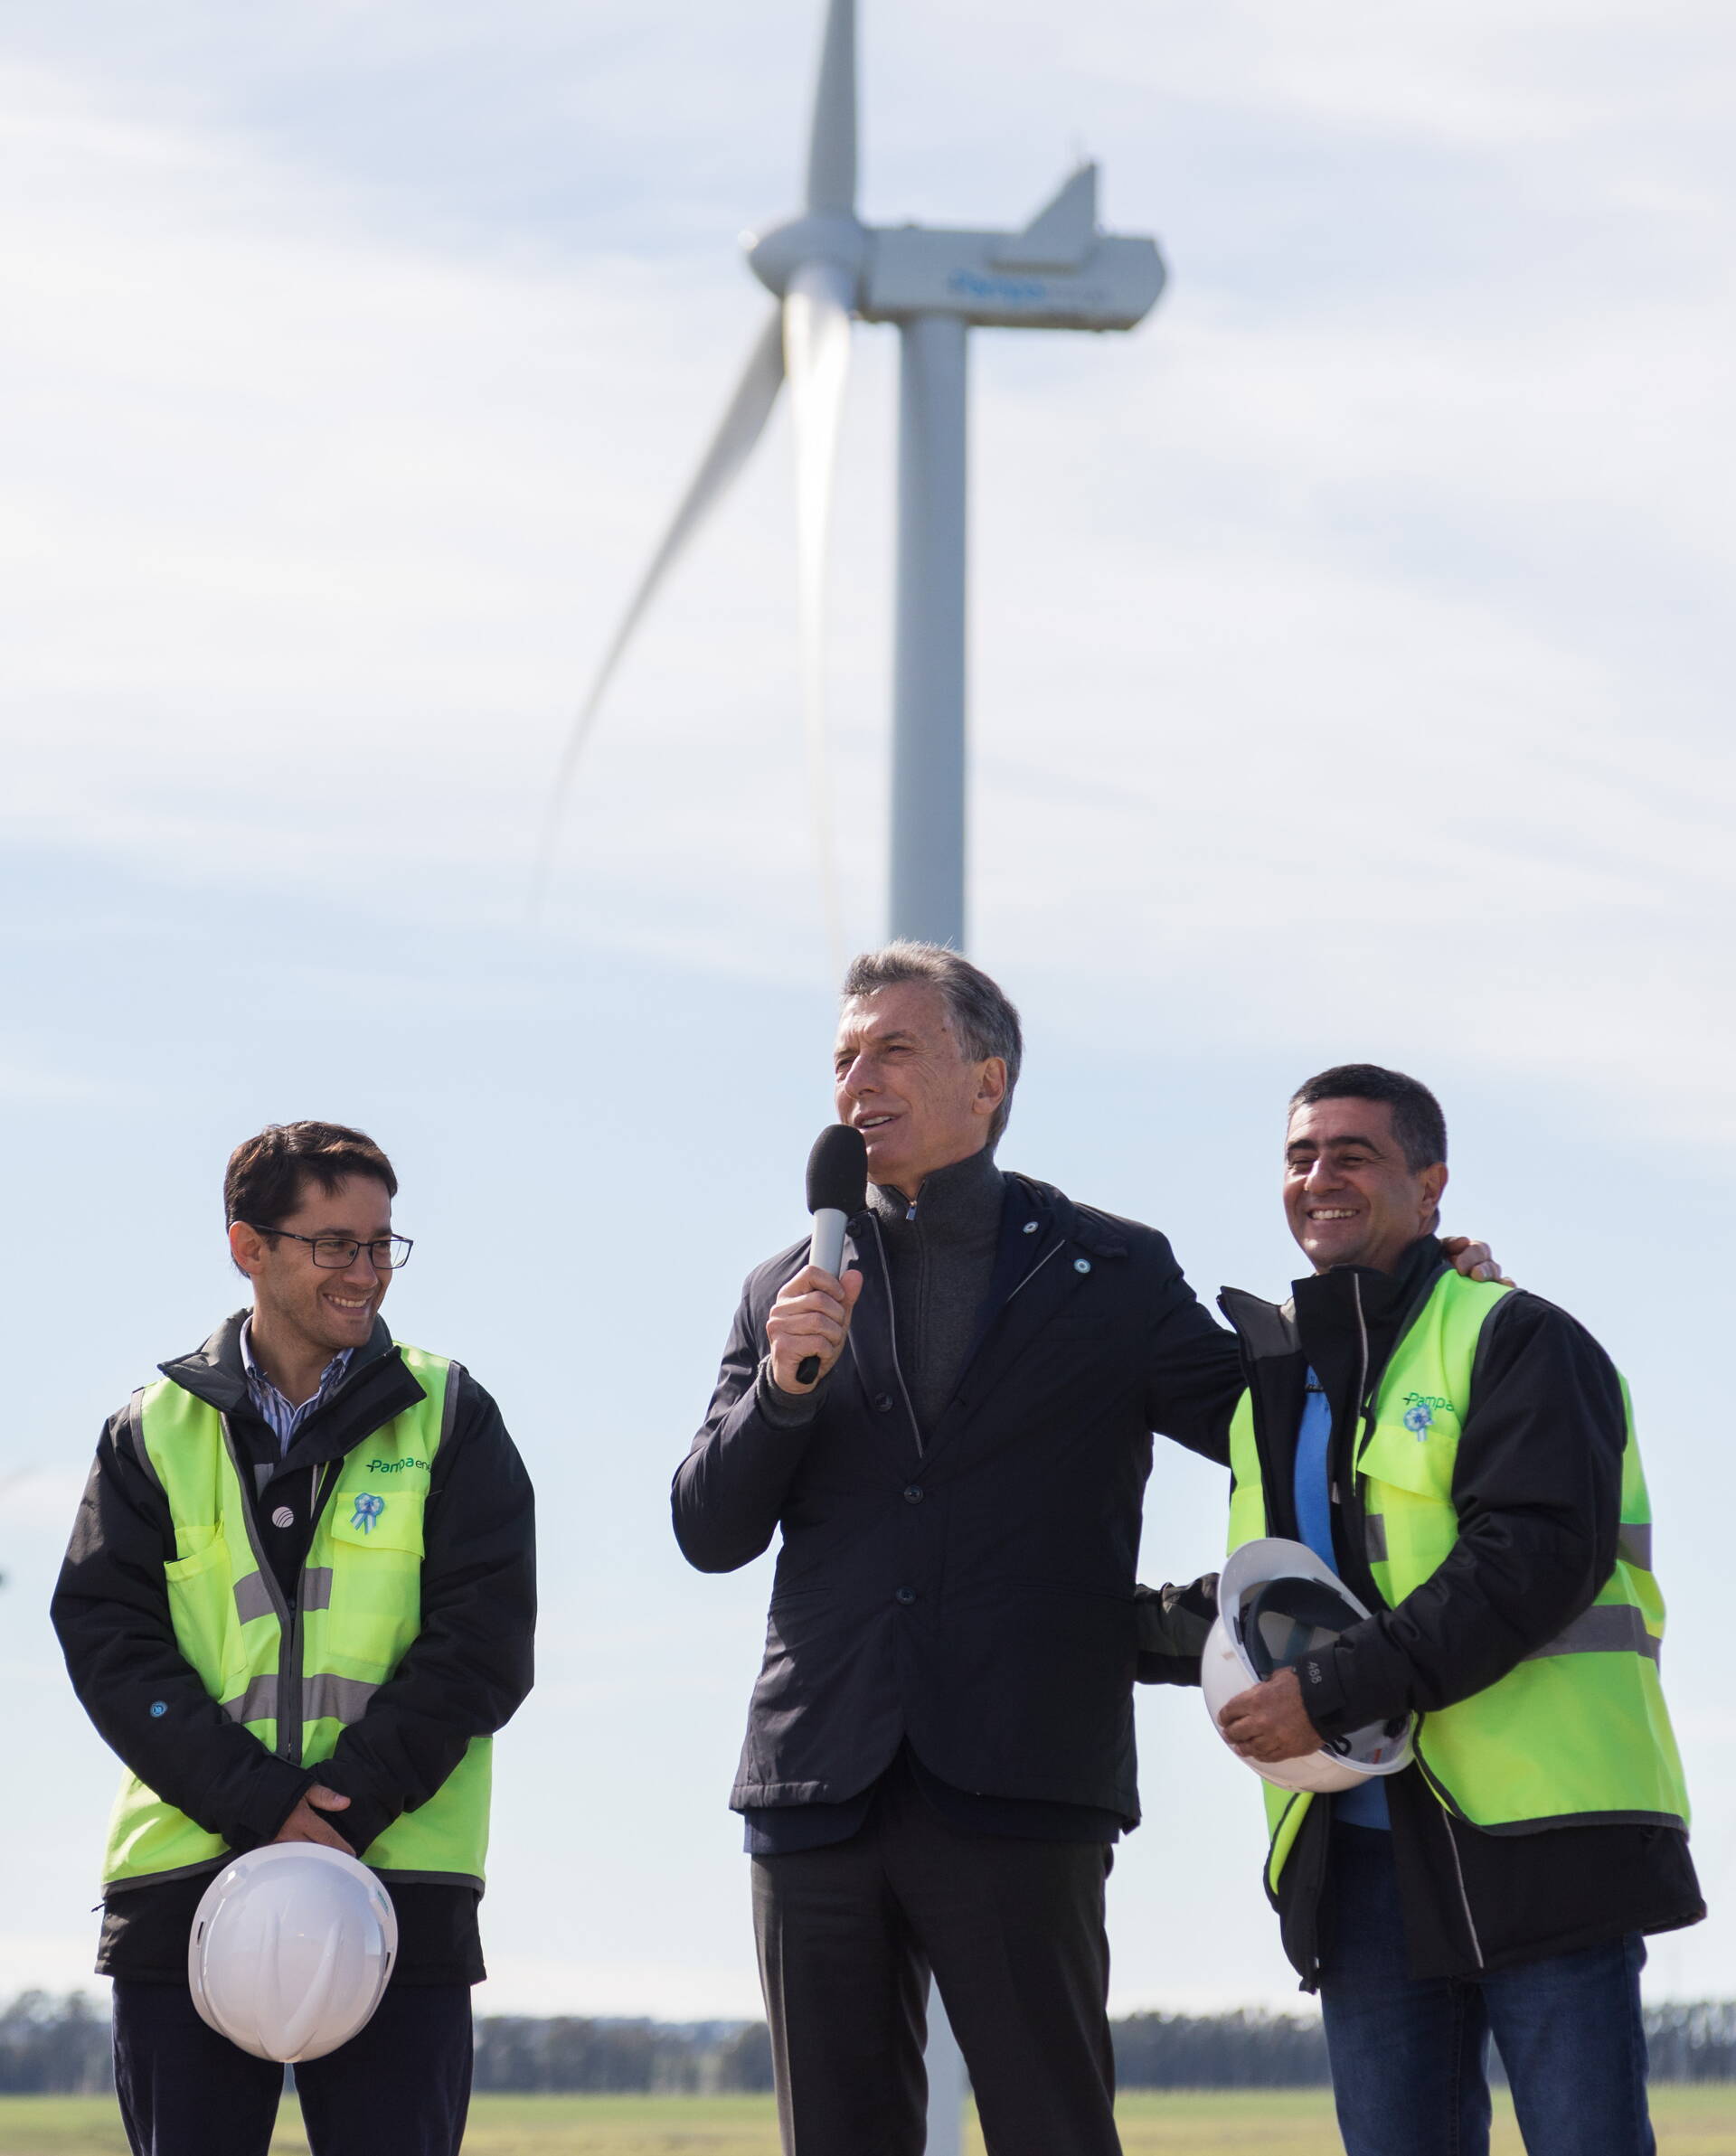 El Presidente inauguró un parque eólico que generará electricidad para 200 mil hogares